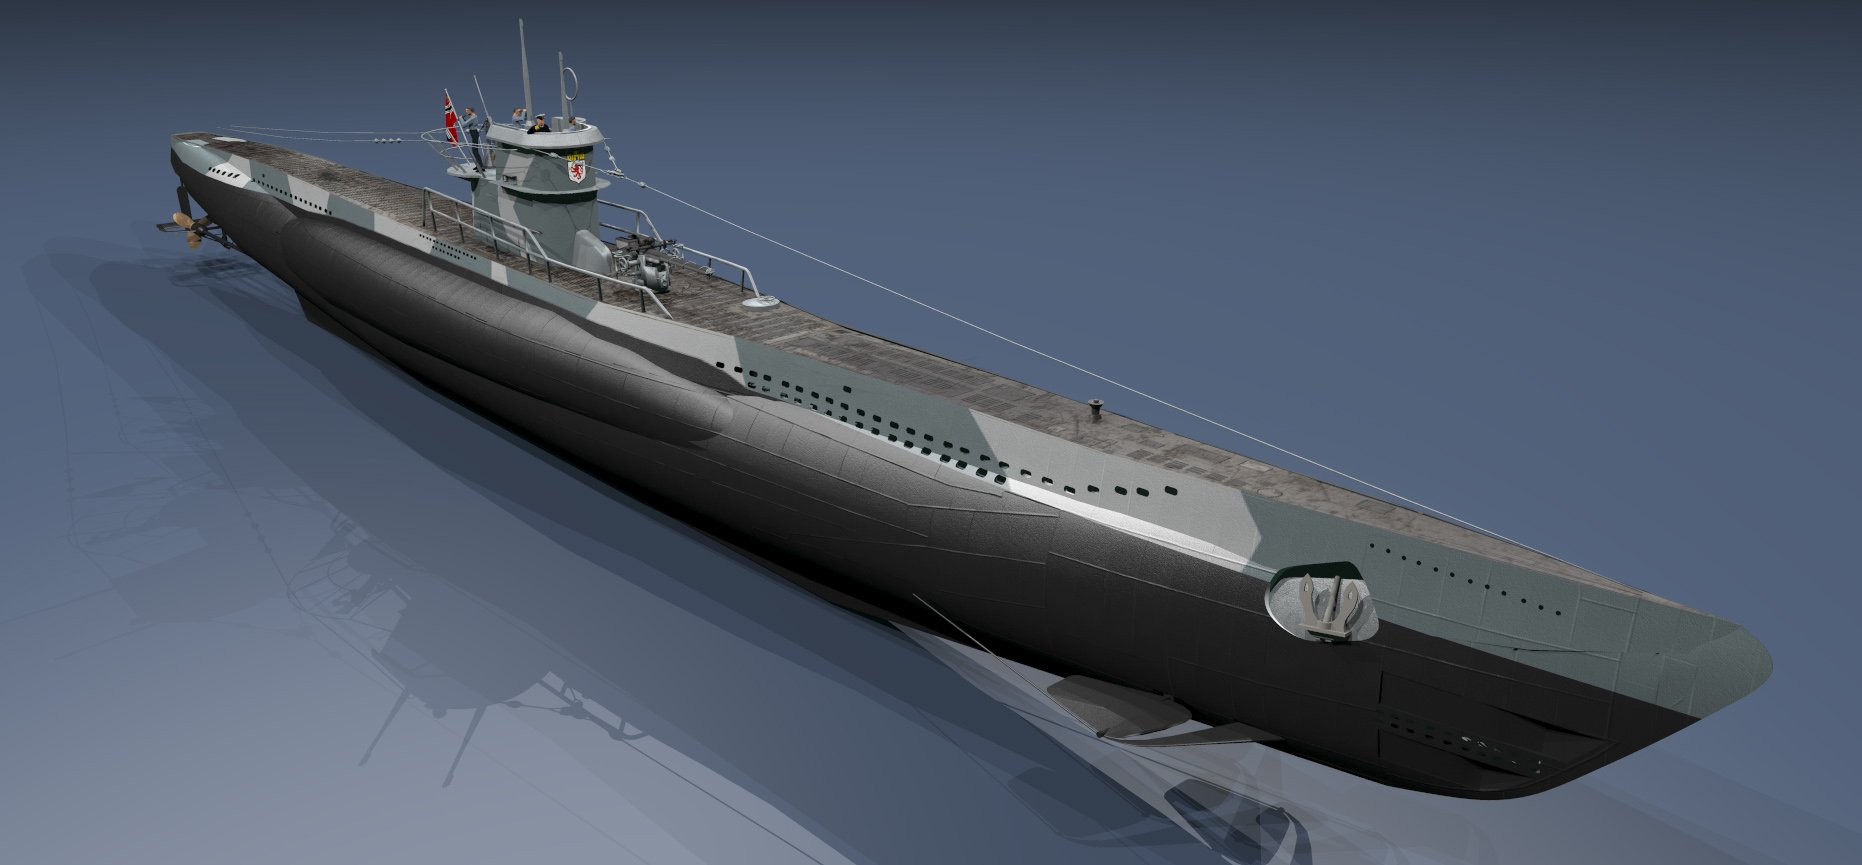 Тип 7 i. Немецкая подводная лодка u307. U-Boat подлодки типа 7с. U-Boat 995. U-995 подводная лодка.